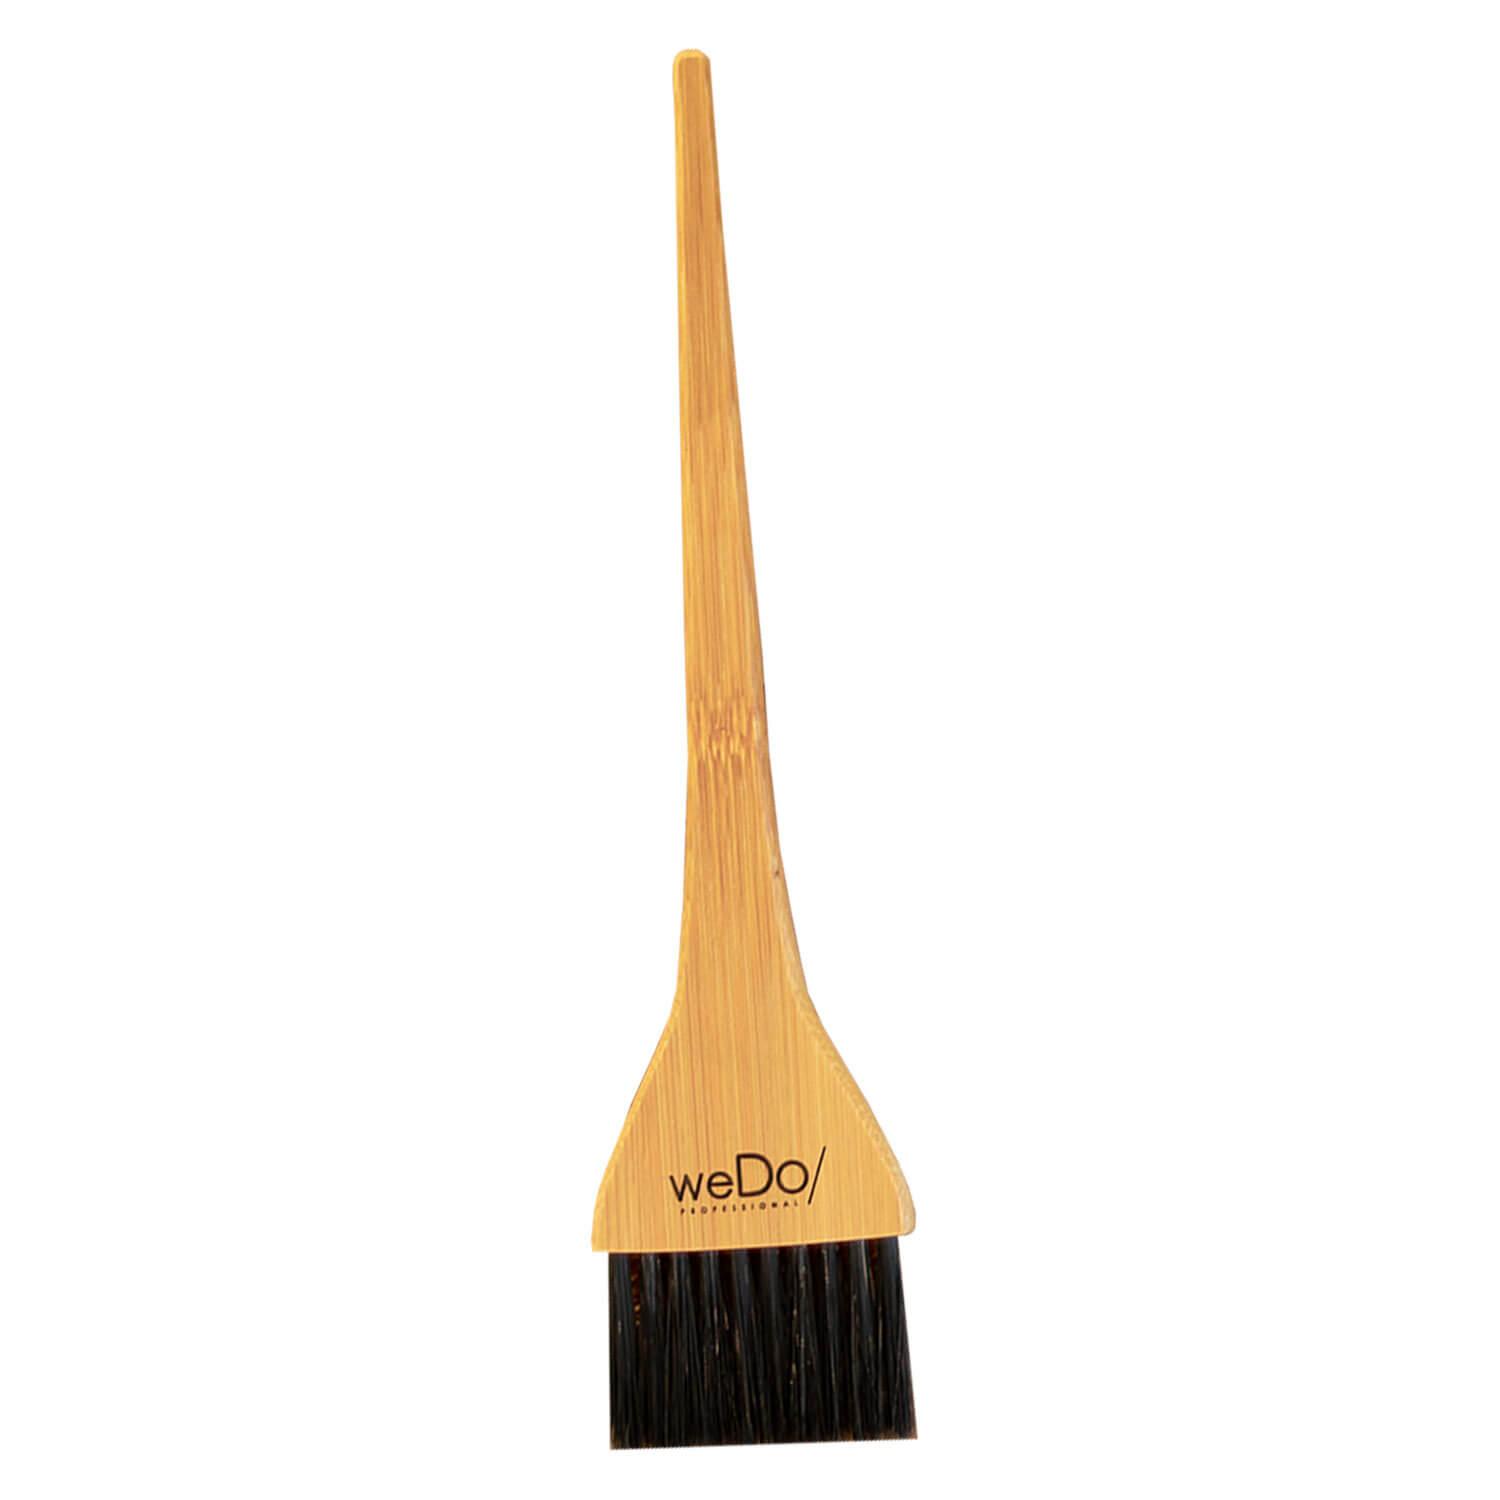 weDo/ - Bamboo Treatment Brush